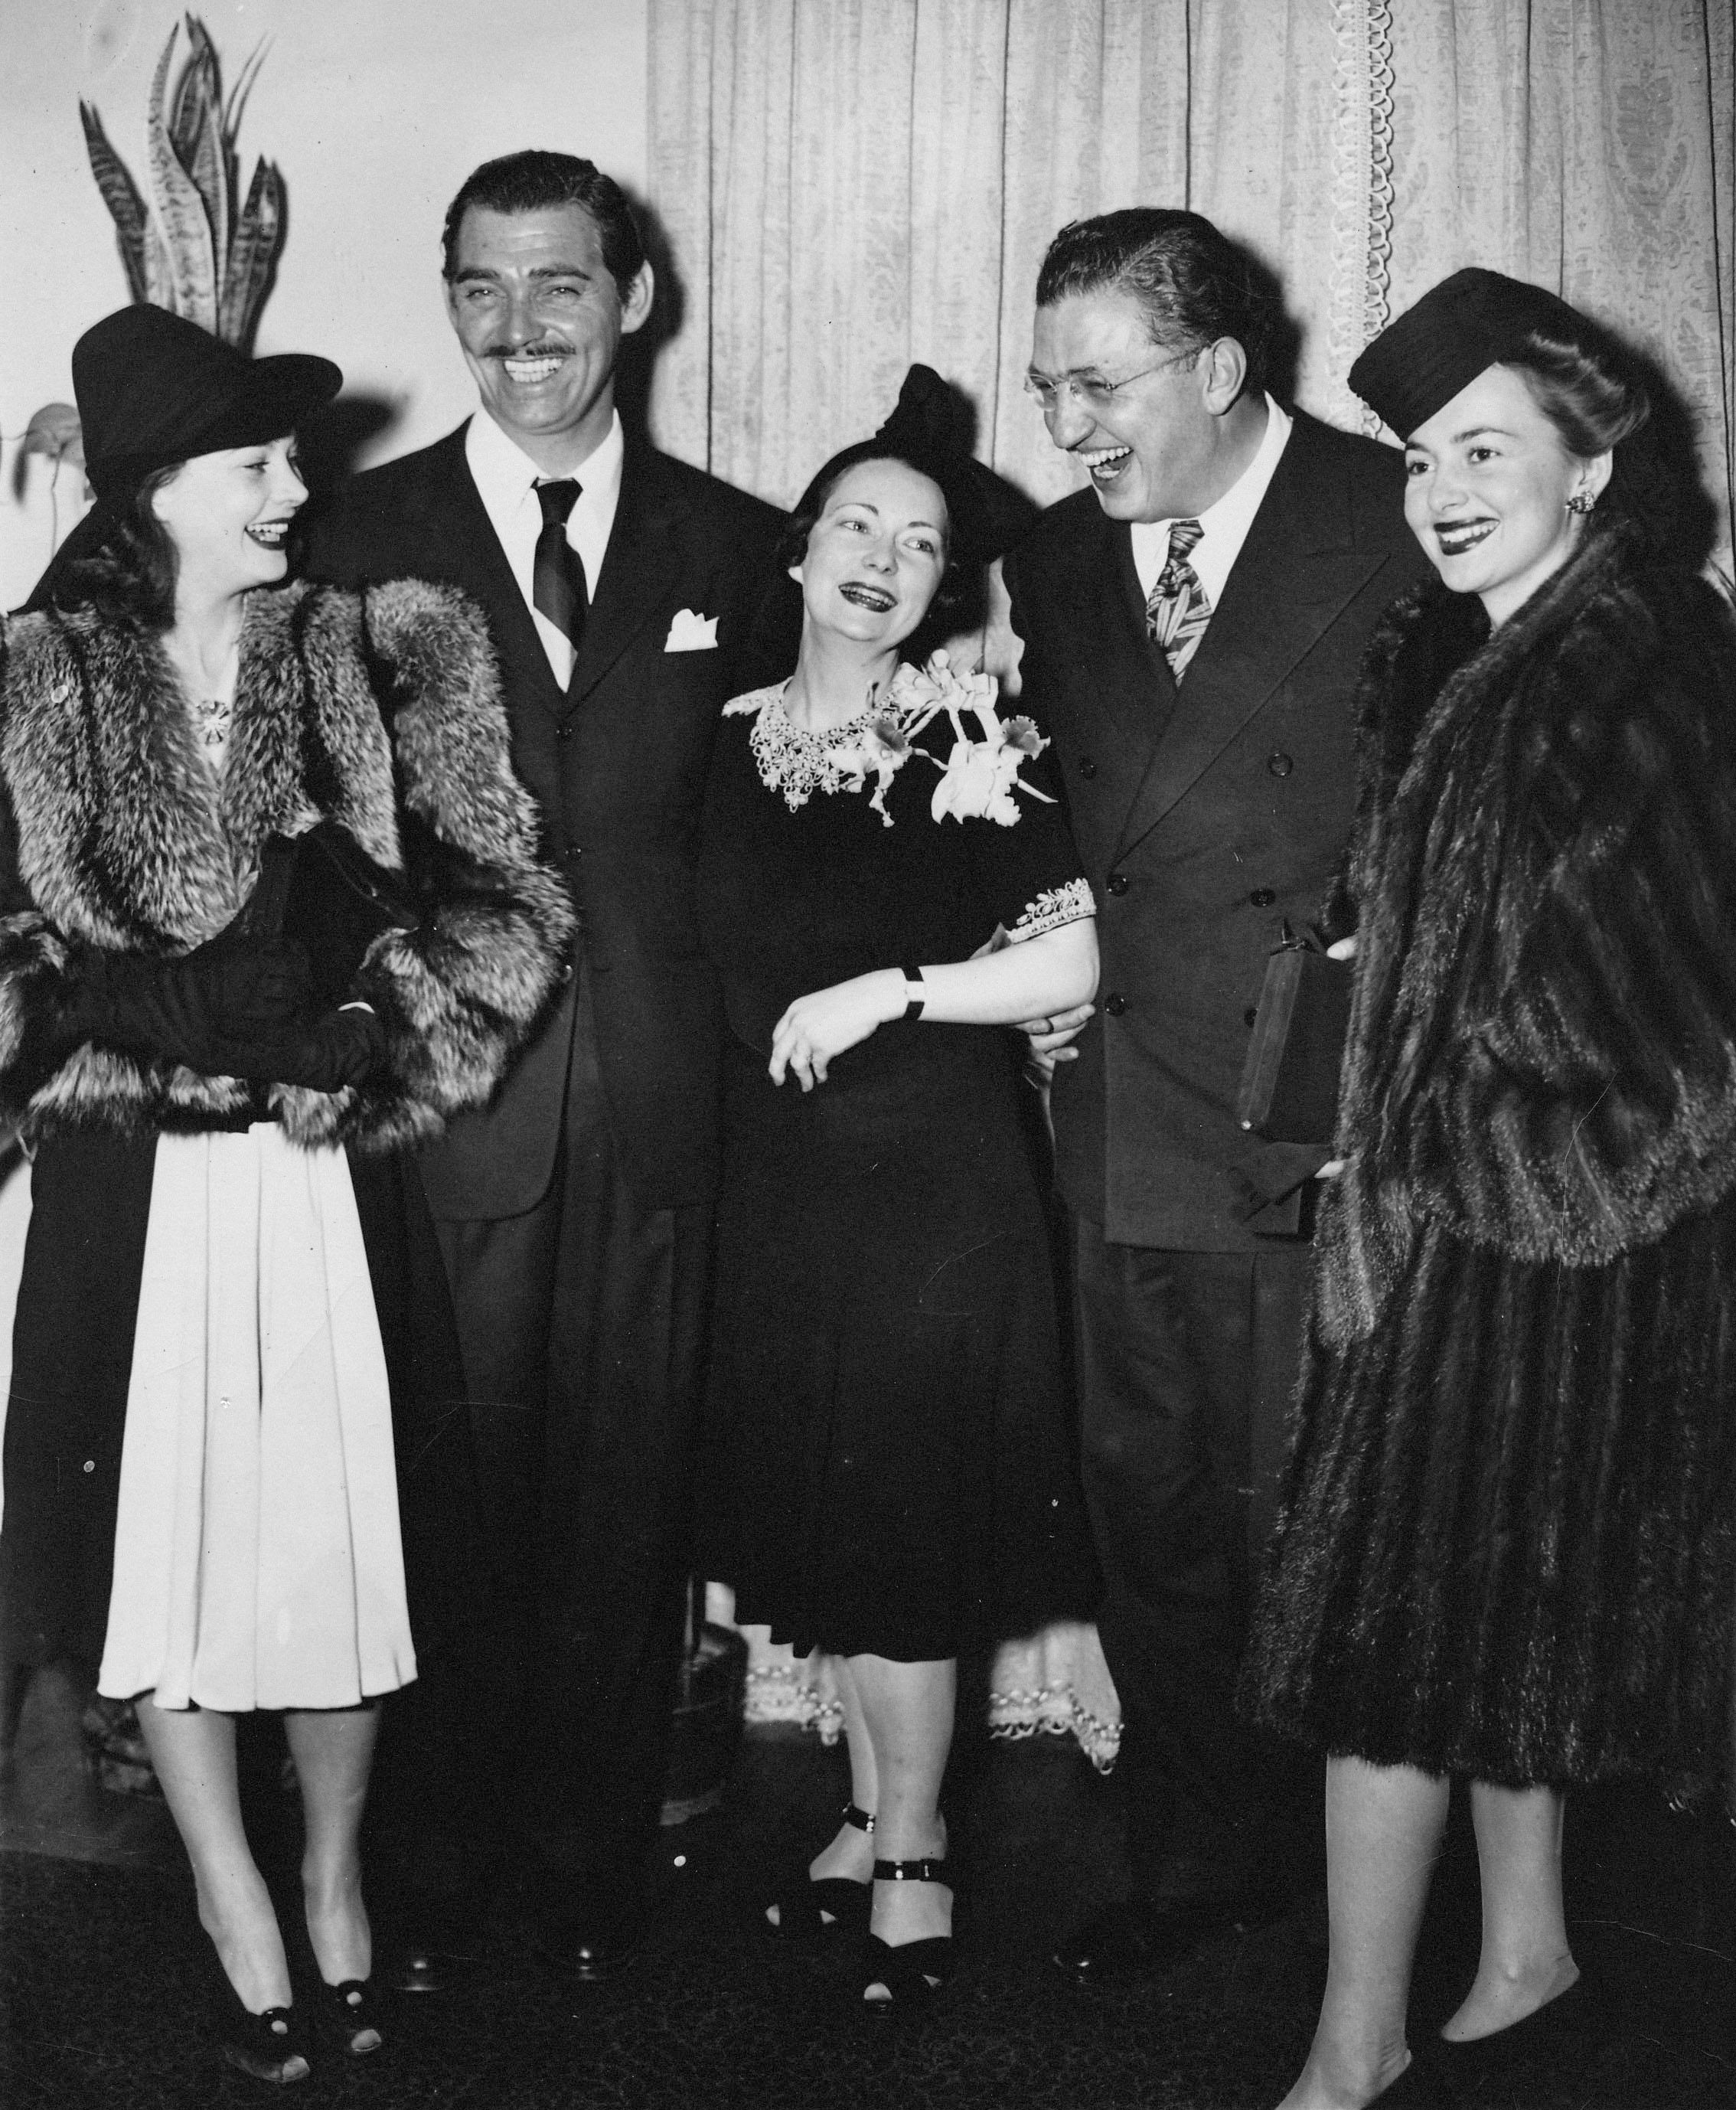 Вивьен Ли, Кларк Гейбл, Маргарет Митчелл, Дэвид Селзник и Оливия Де Хэвилленд на премьере фильма «Унесенные ветром» в 1939 году. Источник: thirteen.org